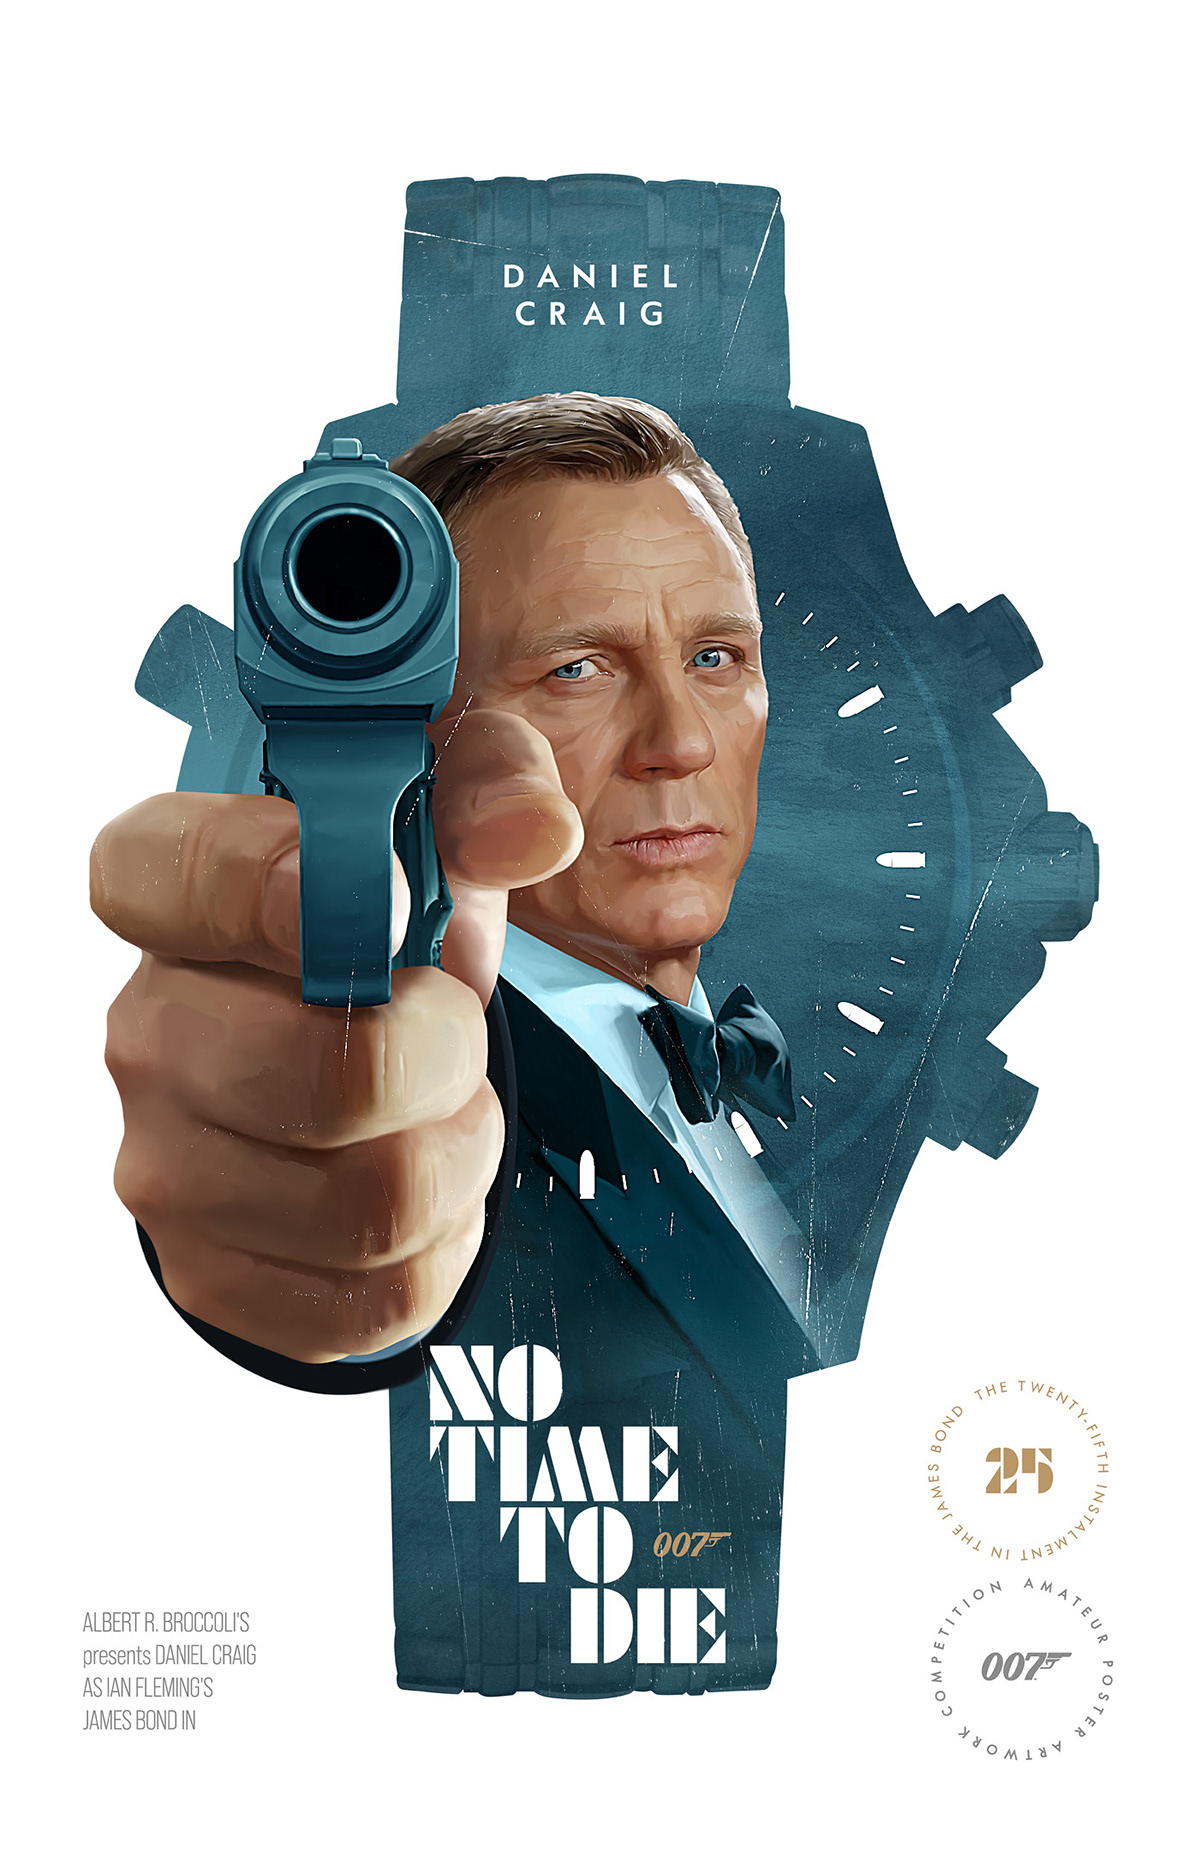 daniel craig design fedchenko Film   ILLUSTRATION  james bond movie photoshop poster